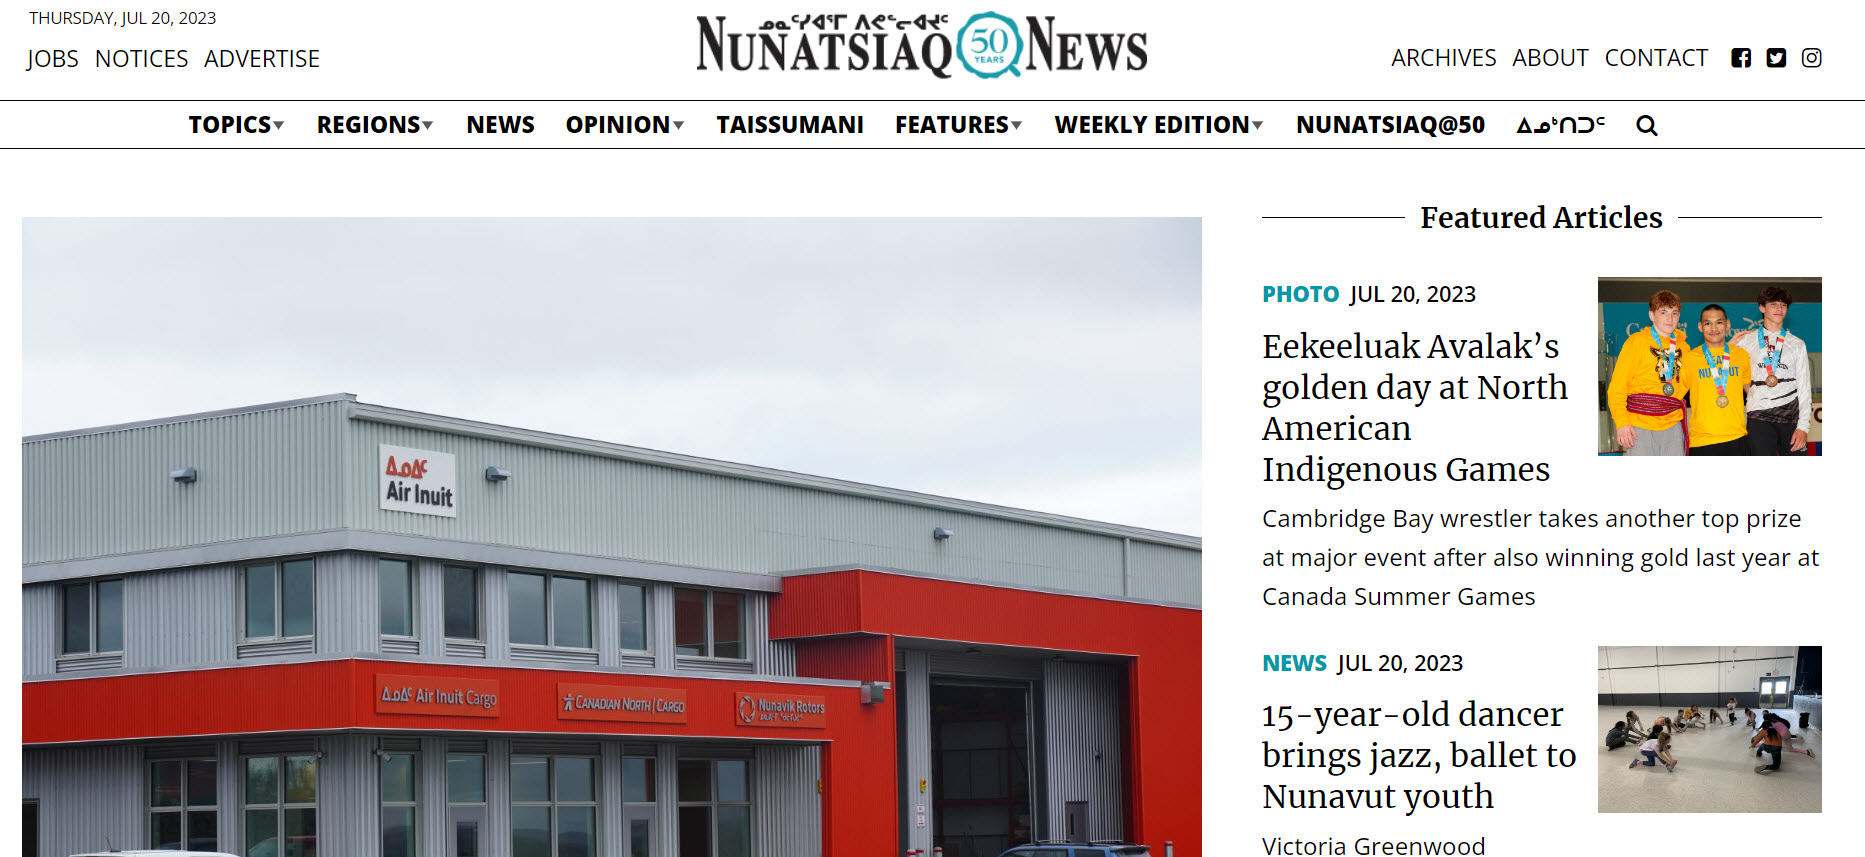 Page web de Nunatsiaq News montrant les nouvelles du 20 juillet 2023